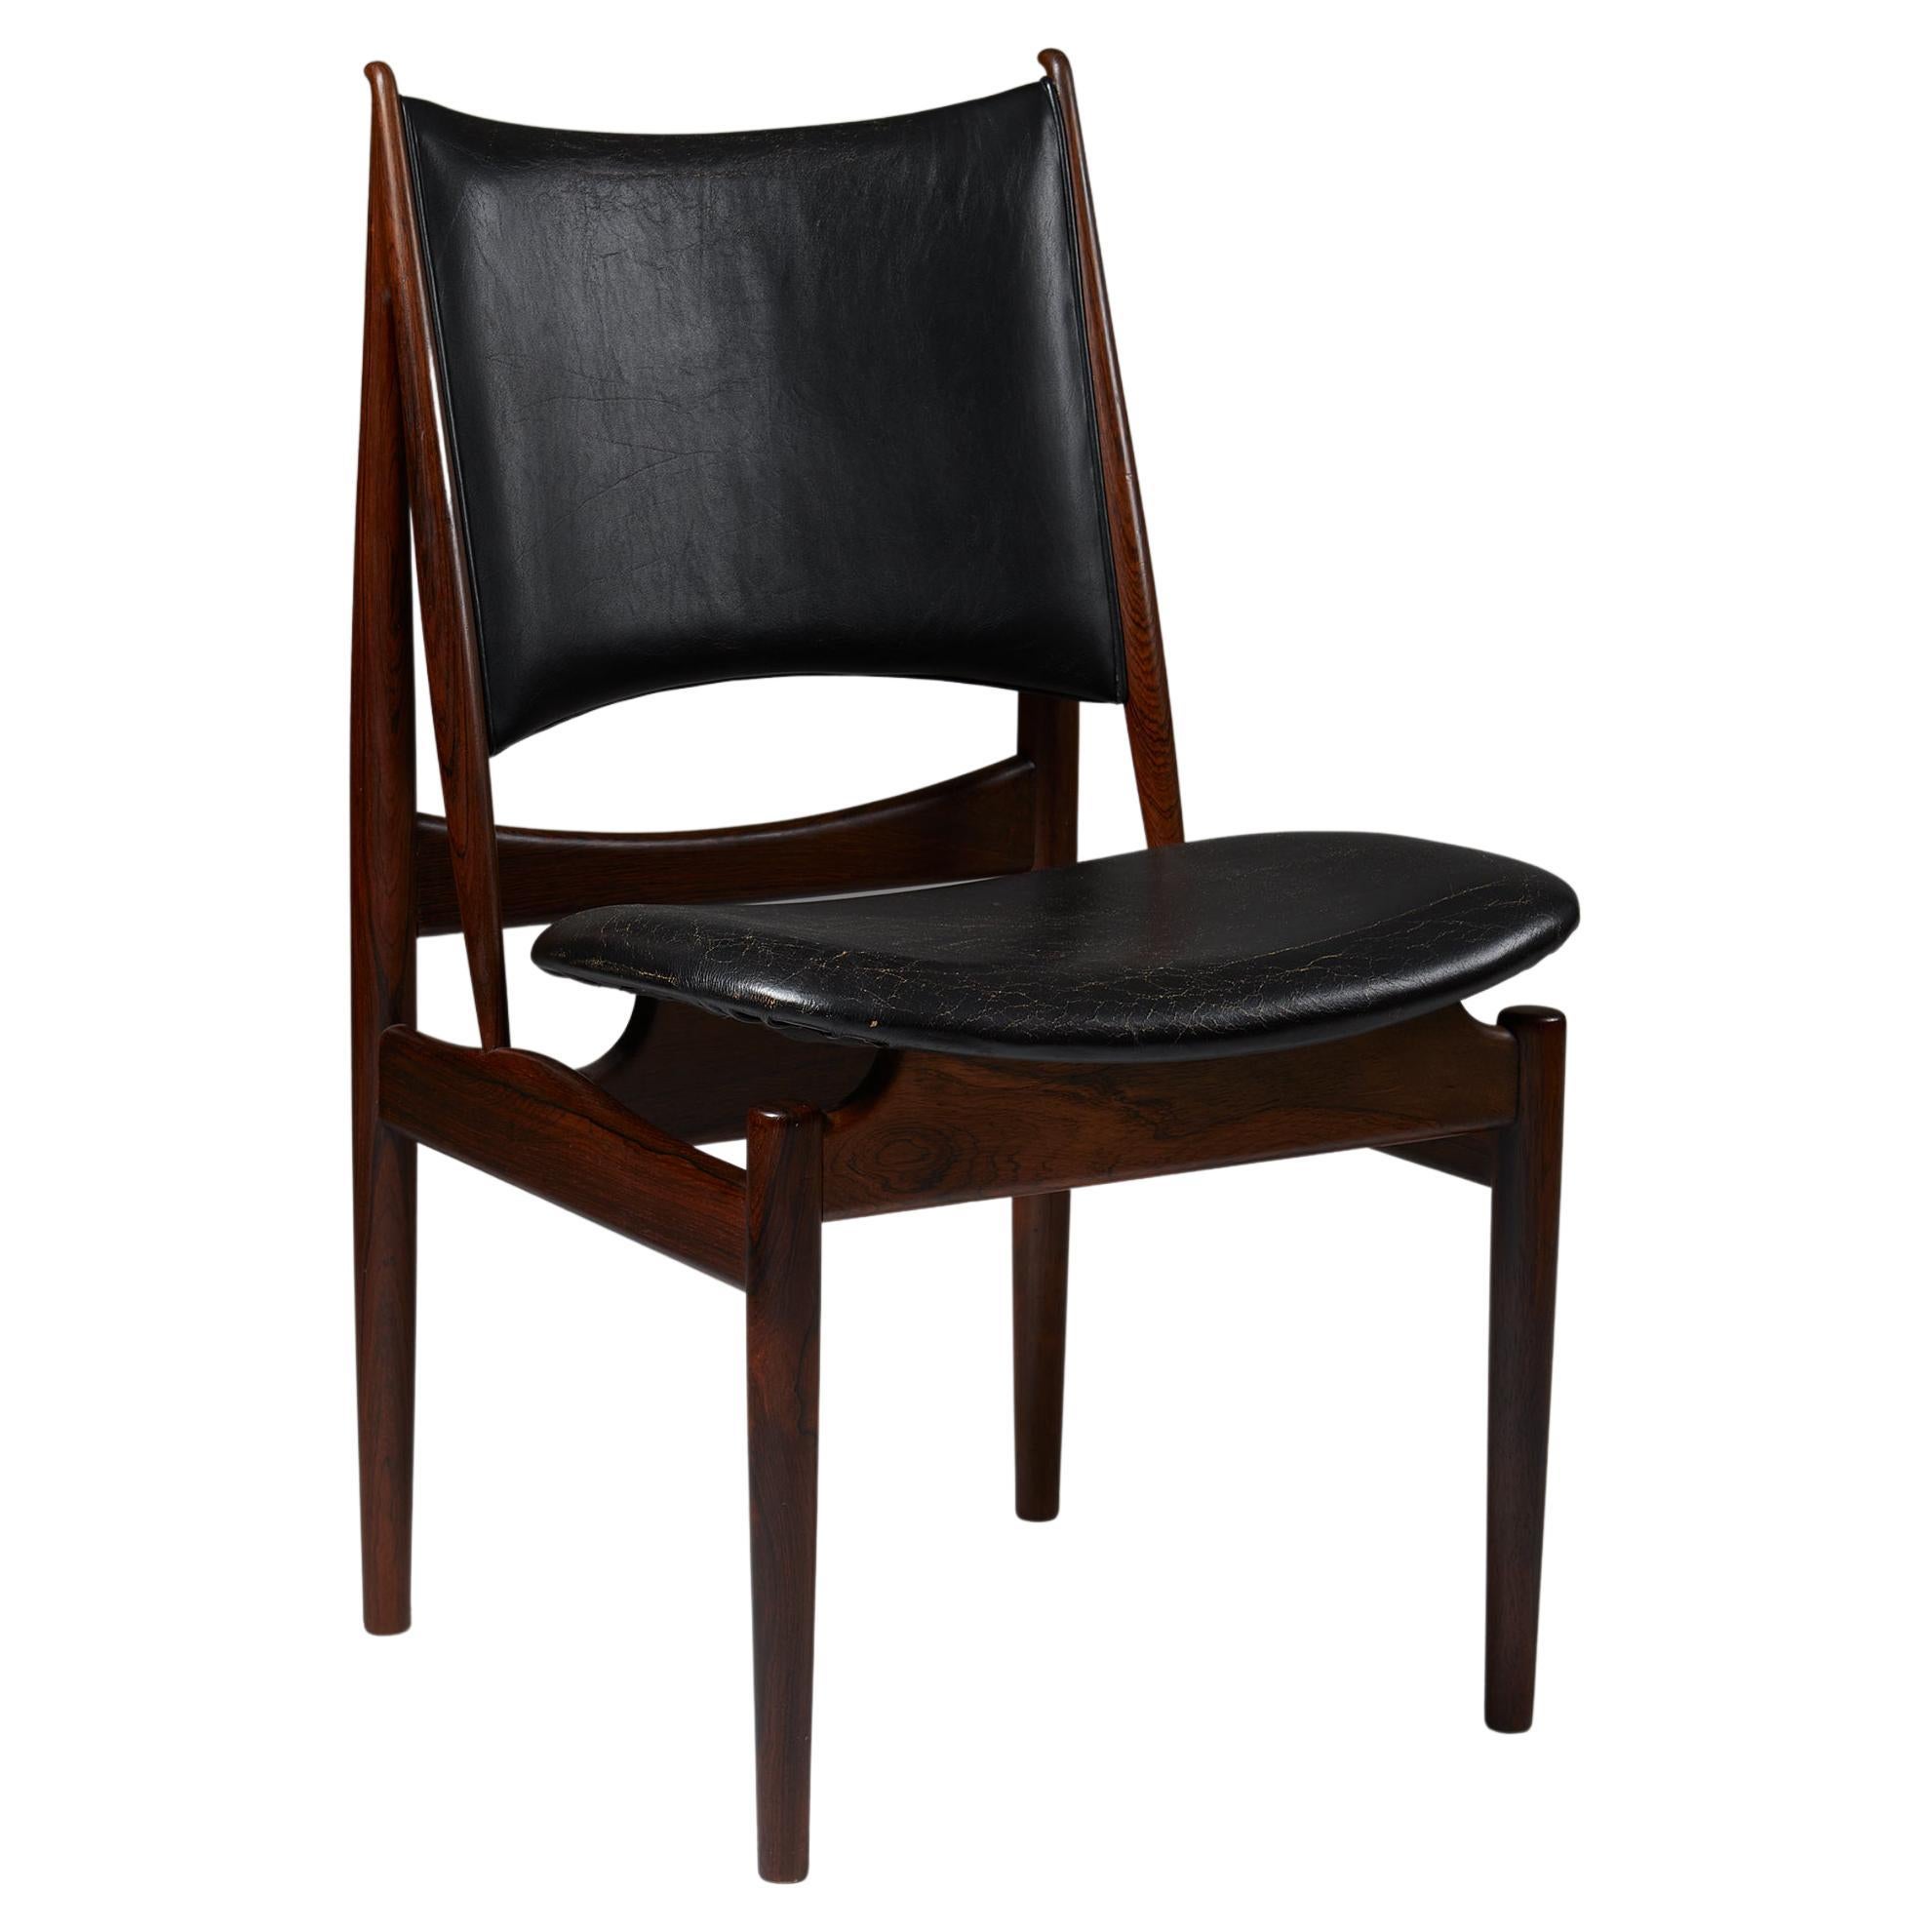 Chair 'Egyptian' designed by Finn Juhl for Niels Vodder, Denmark, 1949